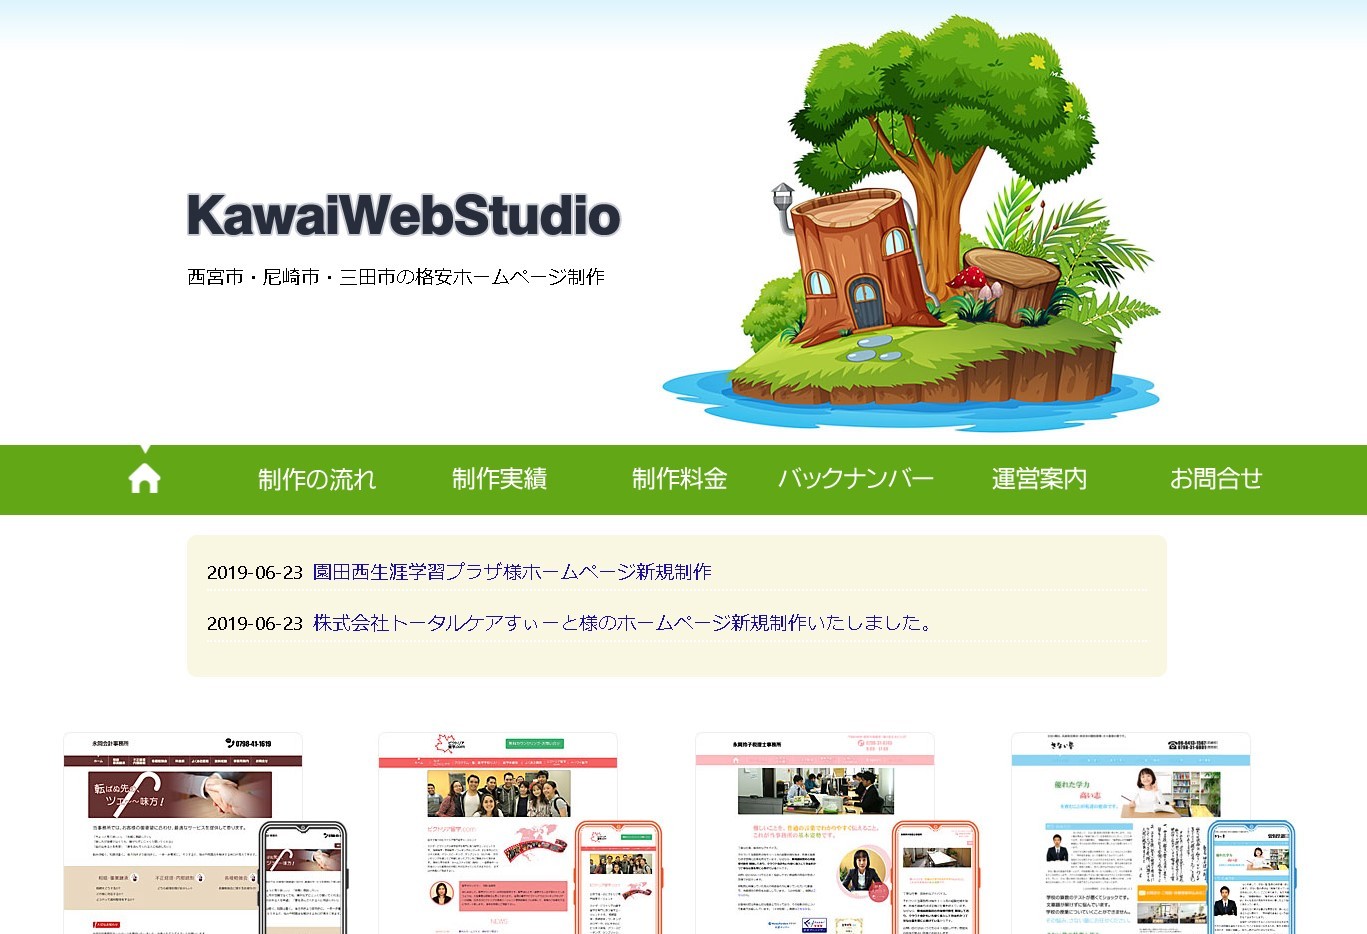 KawaiWebStudioのKawaiWebStudioサービス